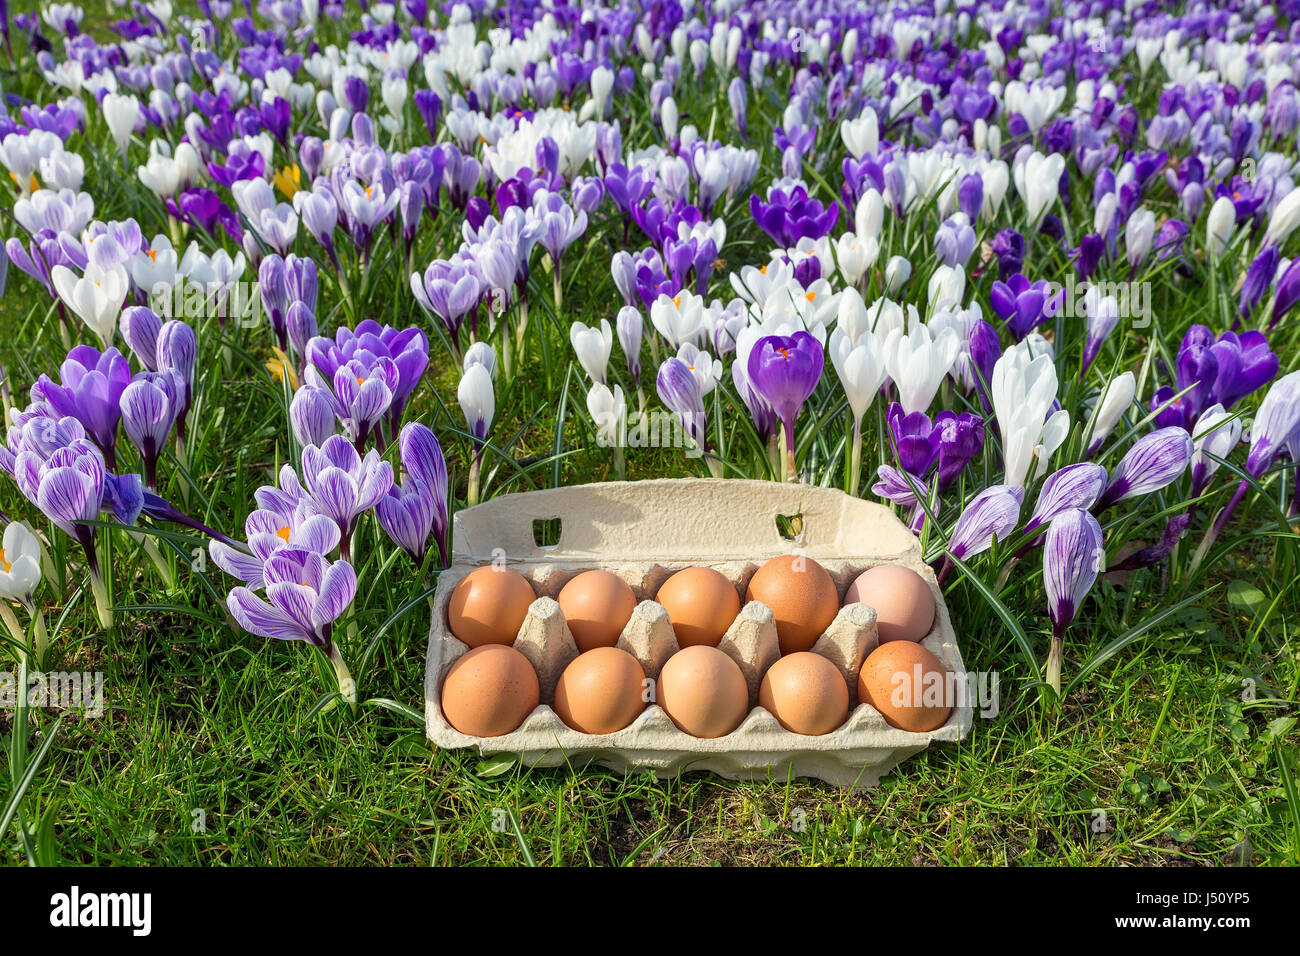 Scatola per uova con le uova di gallina in fioriture di crochi durante la primavera Foto Stock